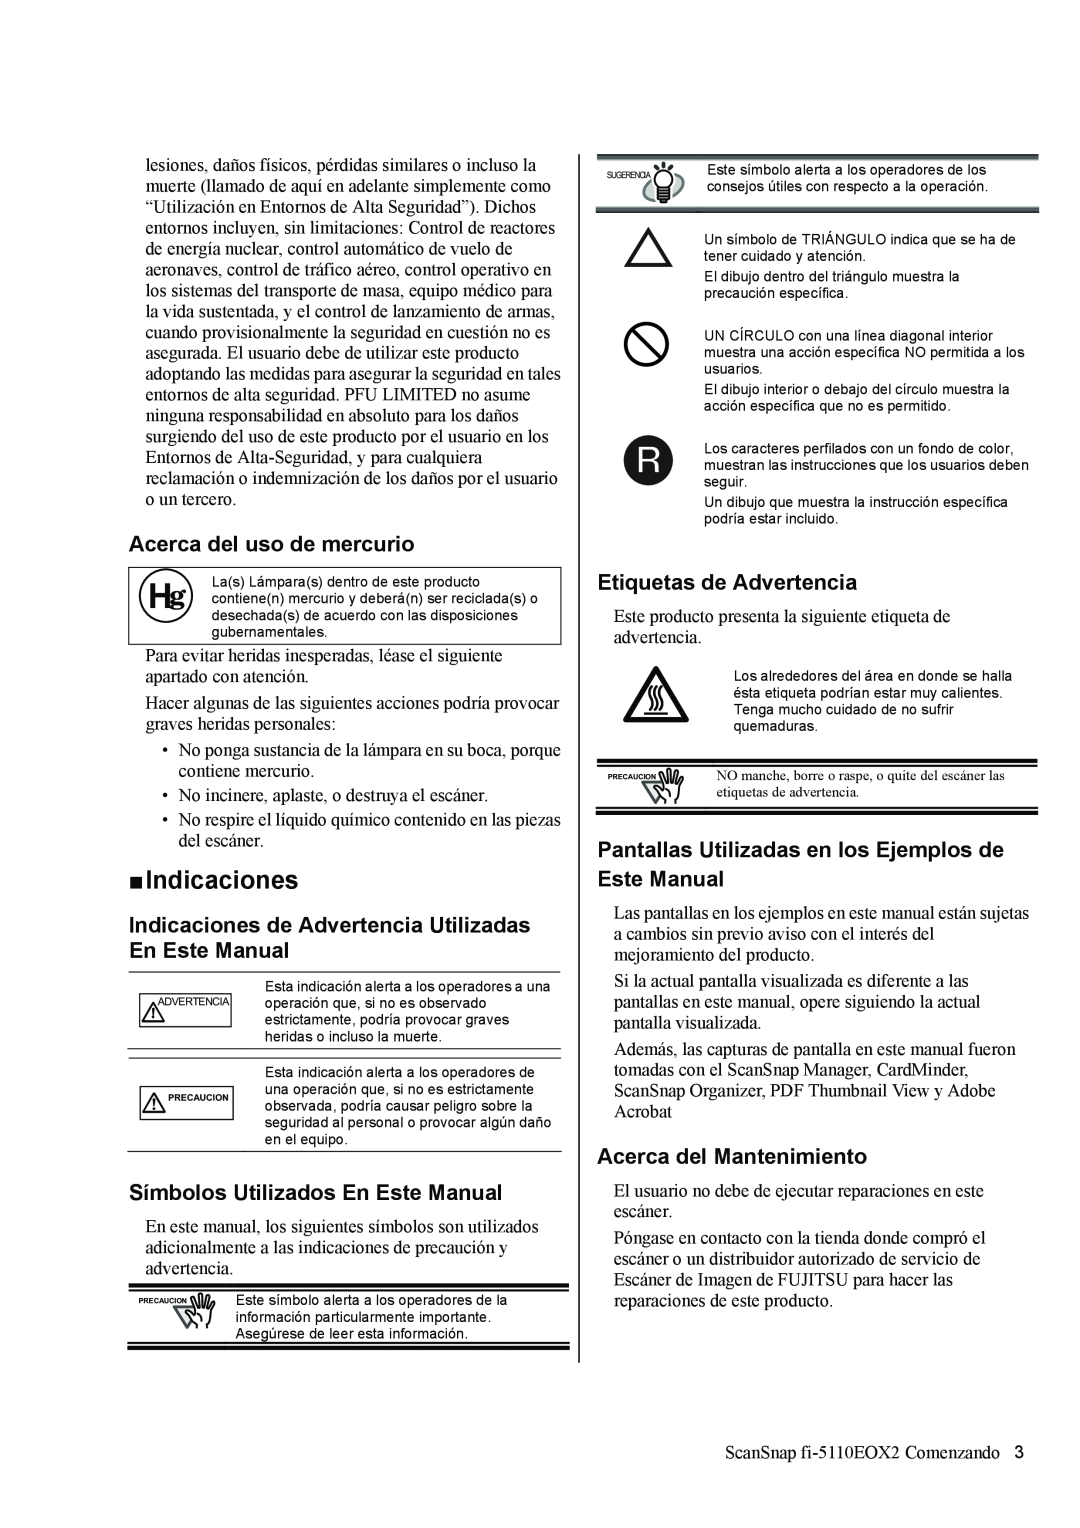 Fujitsu fi-5110EOX2 „ Indicaciones, Acerca del uso de mercurio, Indicaciones de Advertencia Utilizadas En Este Manual 